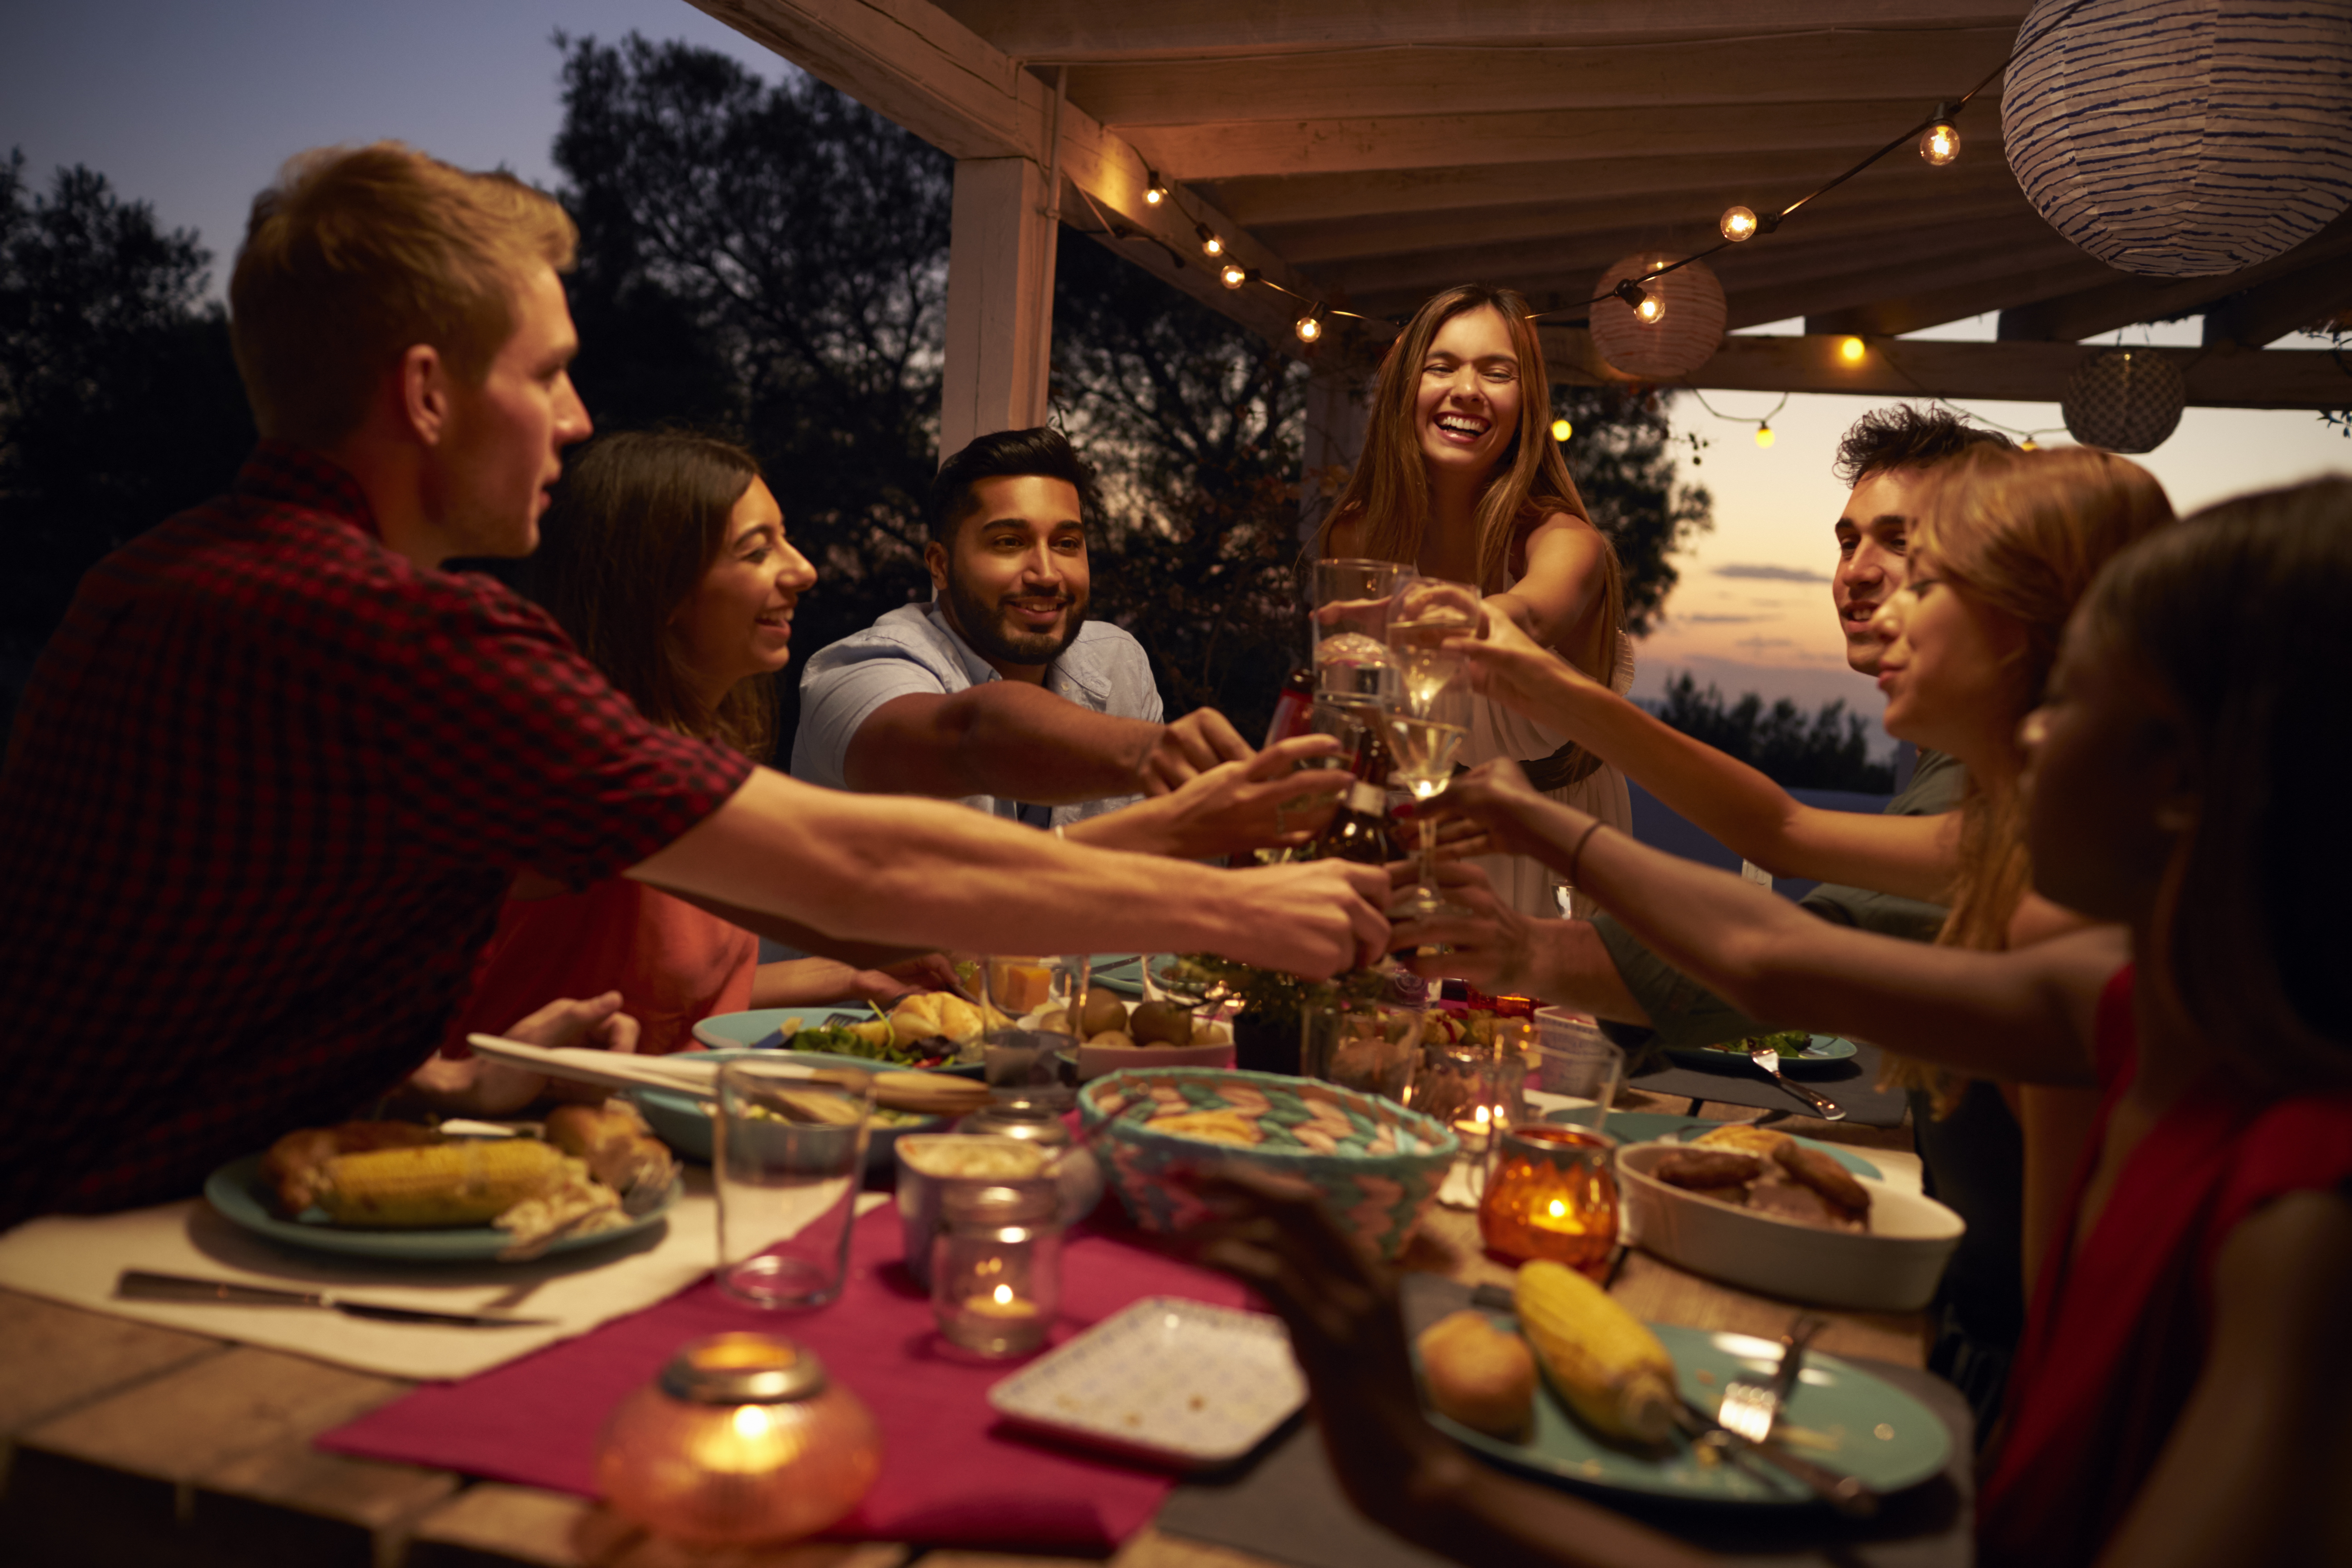 Un groupe d'amis est photographié en train de porter des toasts lors d'une fête | Source : Shutterstock